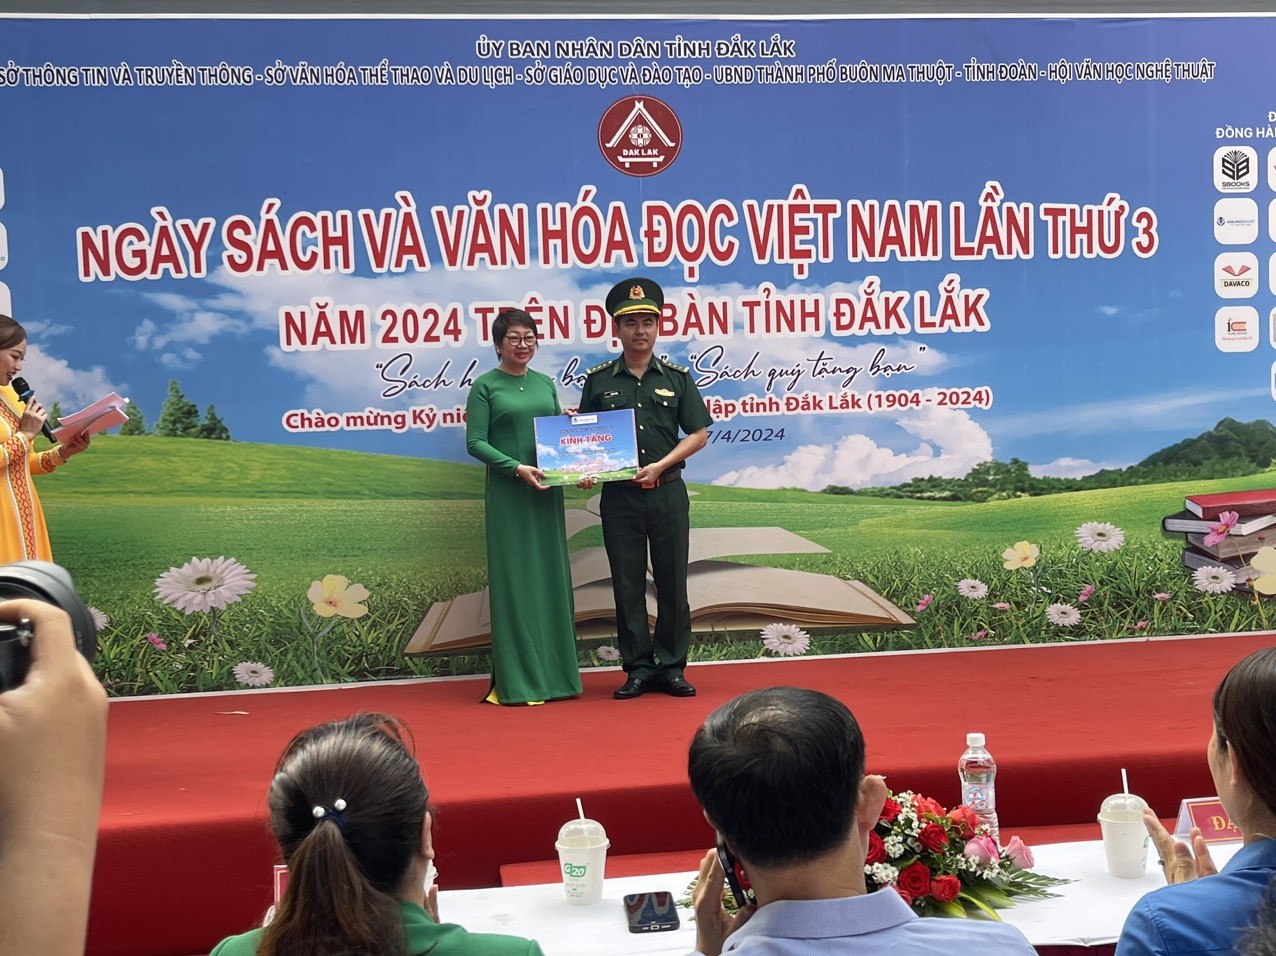 Các nhà xuất bản sách trao tặng sách cho các đồn biên phòng thuộc Bộ đội Biên phòng tỉnh Đắk Lắk.